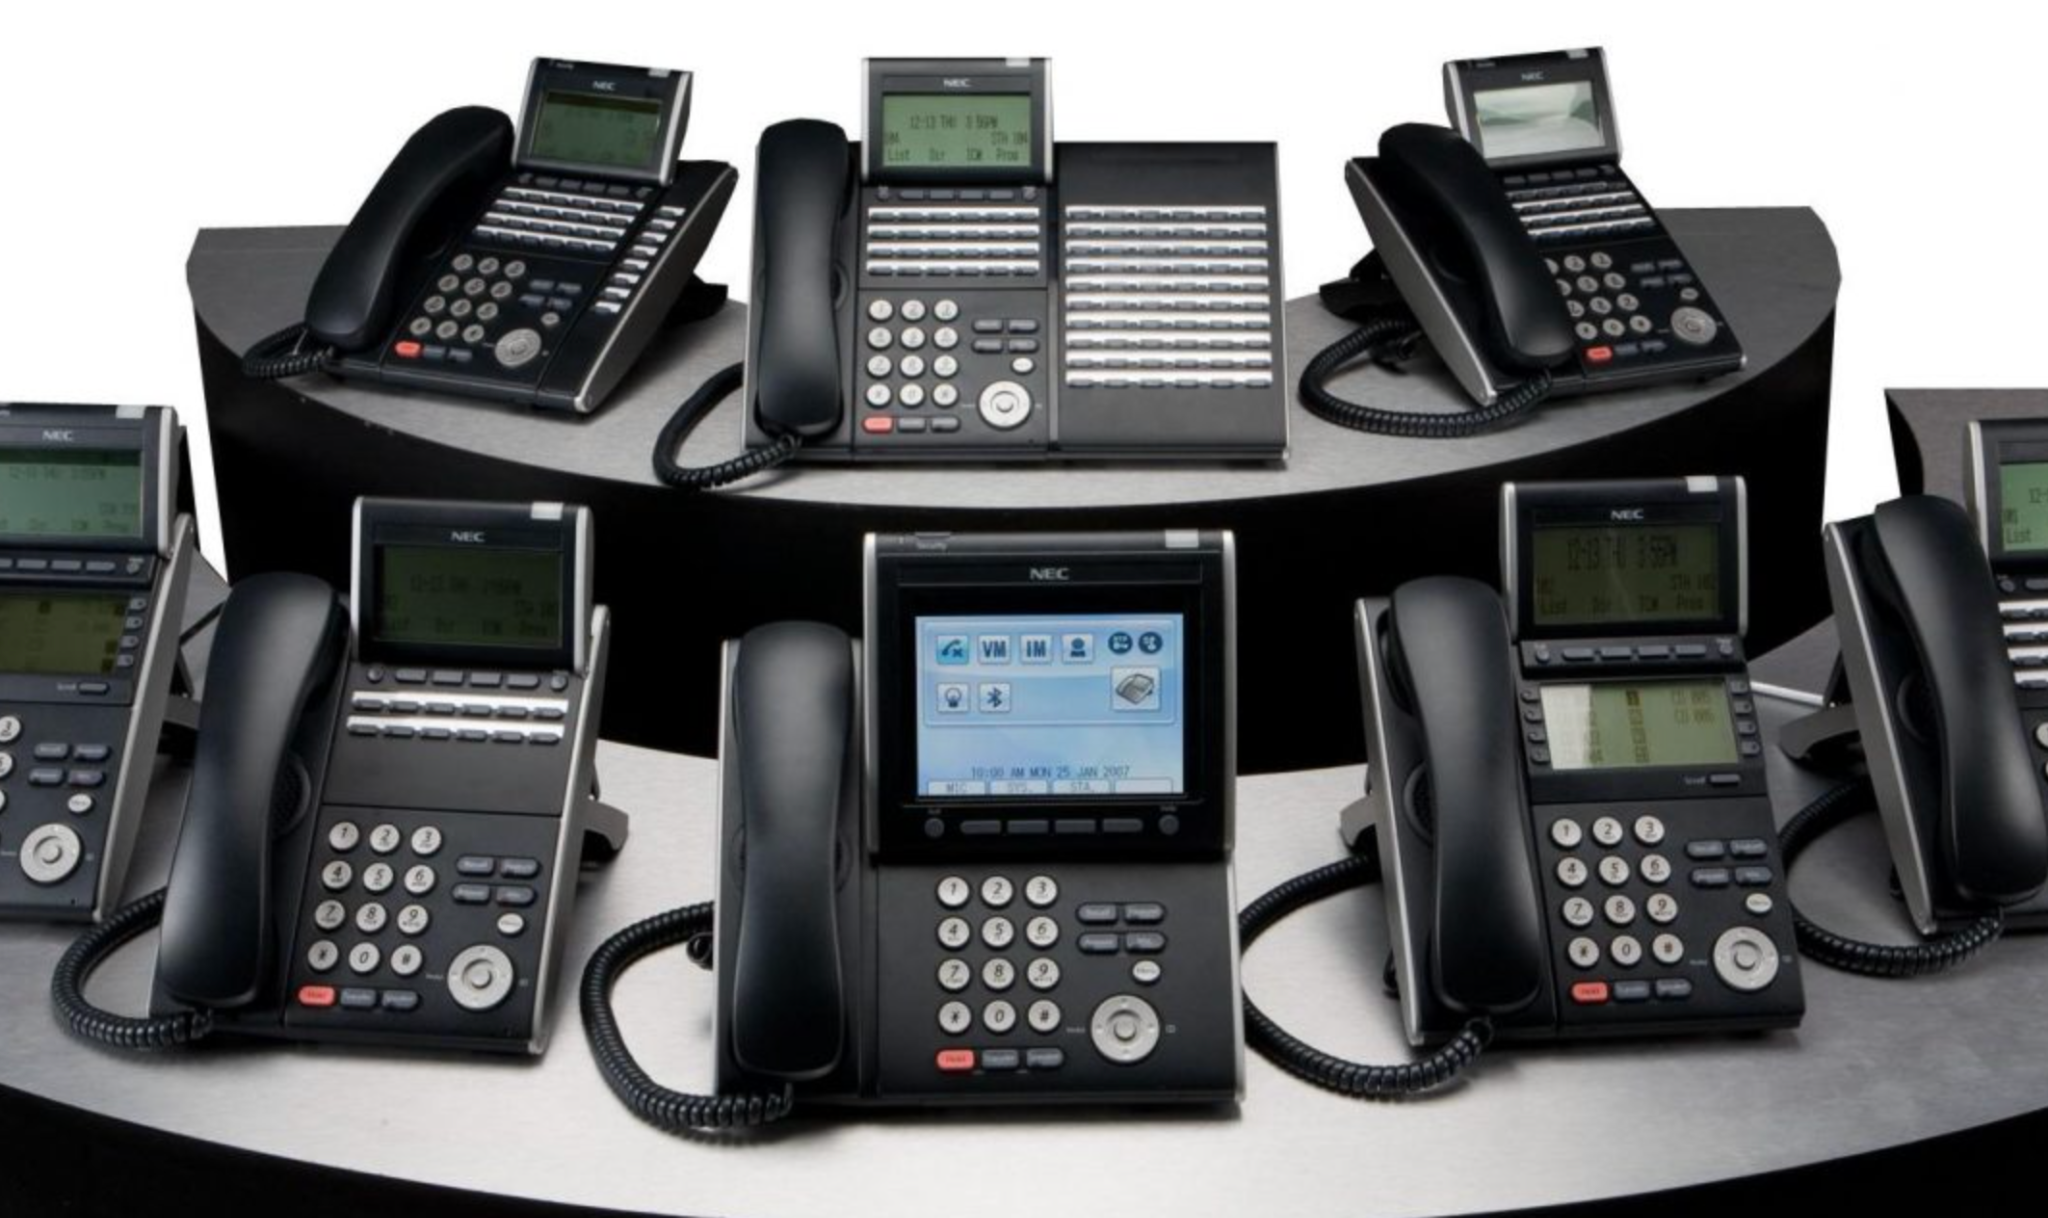 Enterprise business phones